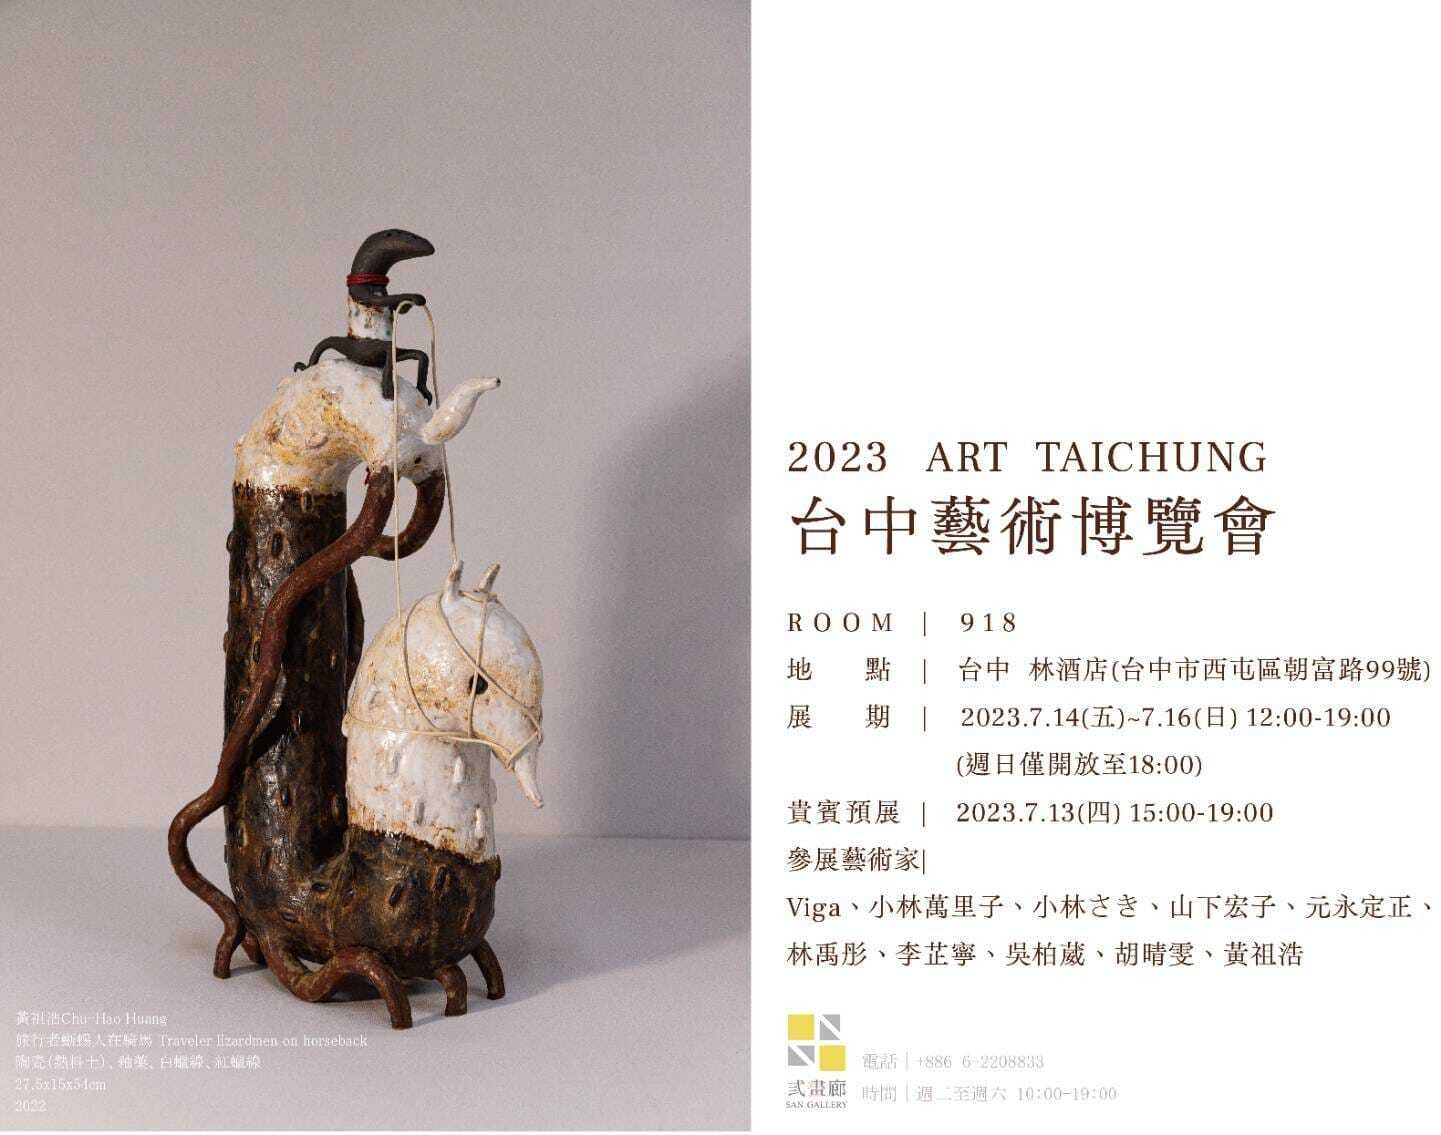 南應大美術系研究生黃祖浩同學獲弎畫廊邀請參加ART TAICHUNG 2023 台中藝術博覽會舉辦聯展。